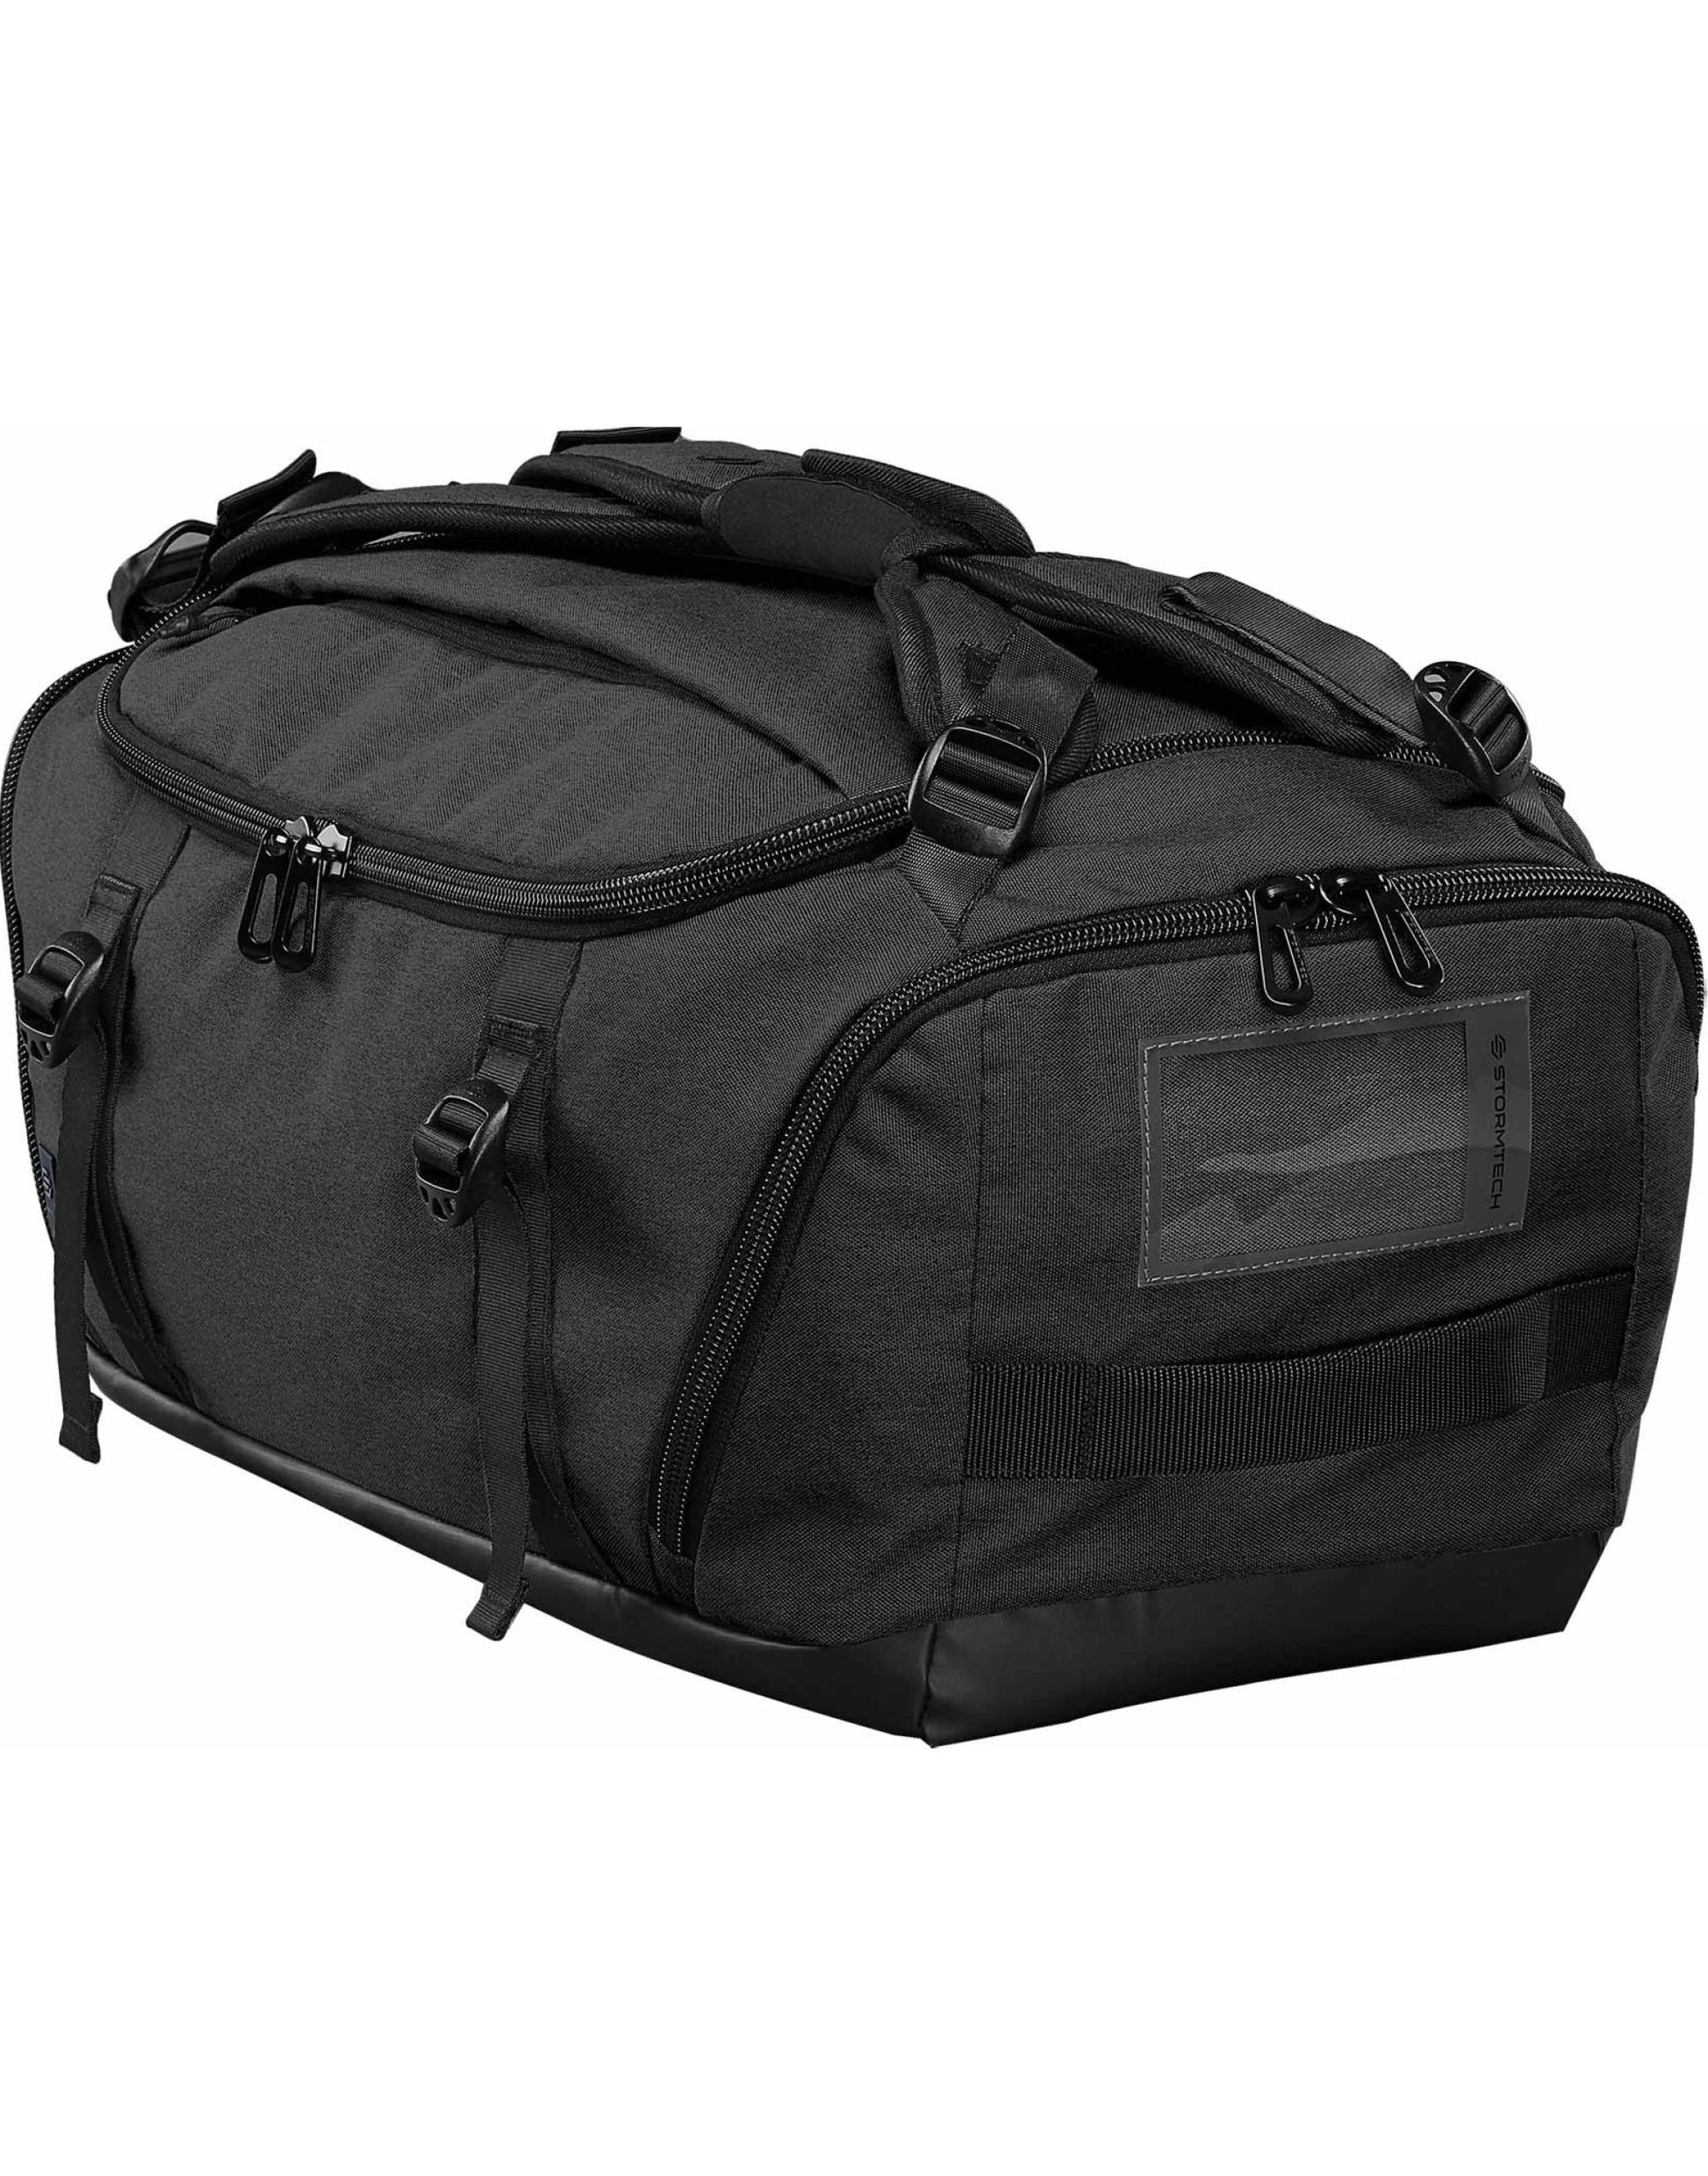 Stormtech Bags | Equinox 30 Duffle Bag | Logo Free Clothing